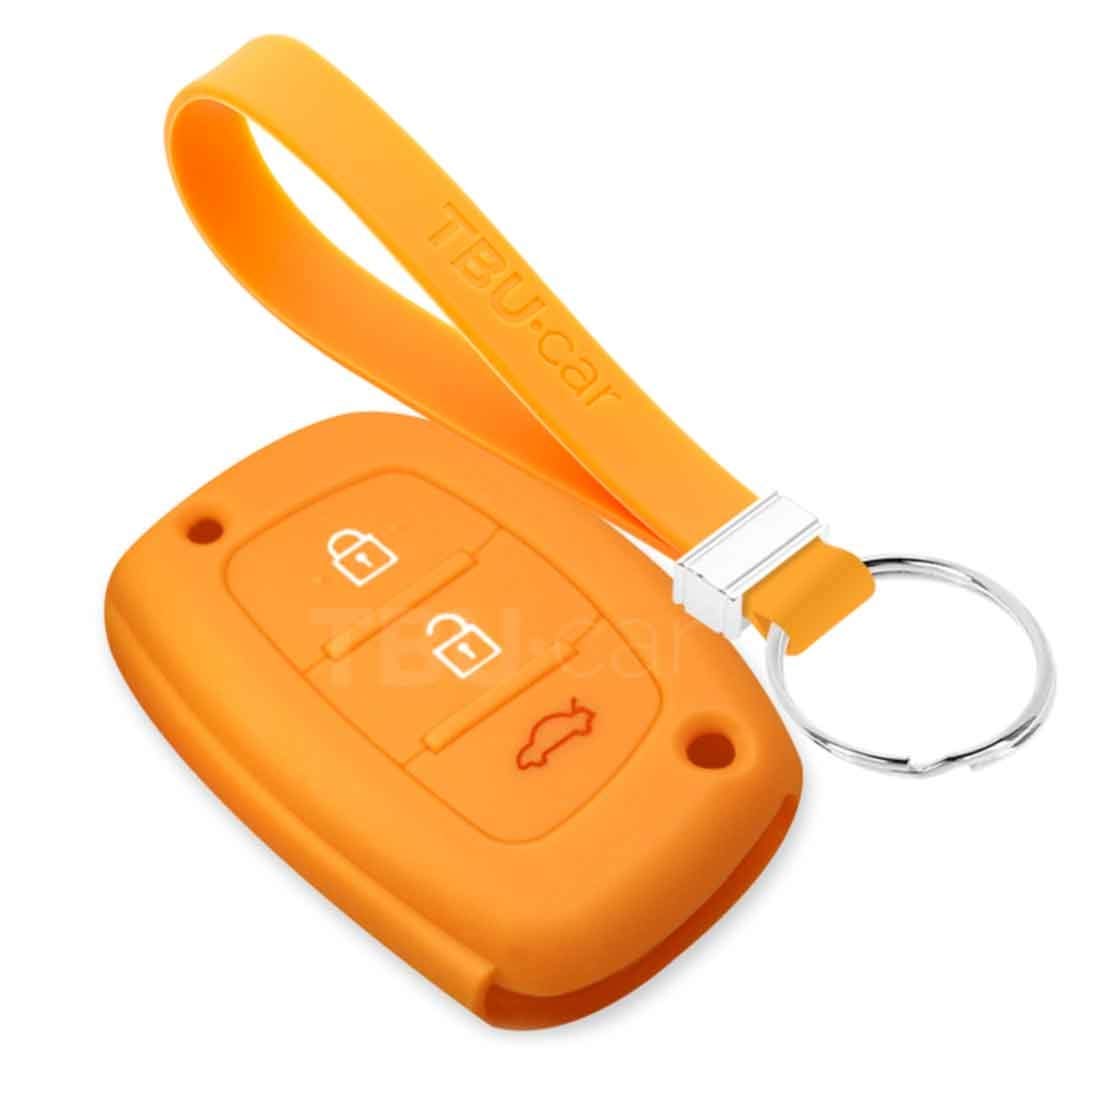 TBU car Autoschlüssel Hülle kompatibel mit Hyundai 3 Tasten (Keyless Entry) - Schutzhülle aus Silikon - Auto Schlüsselhülle Cover in Orange von TBU car